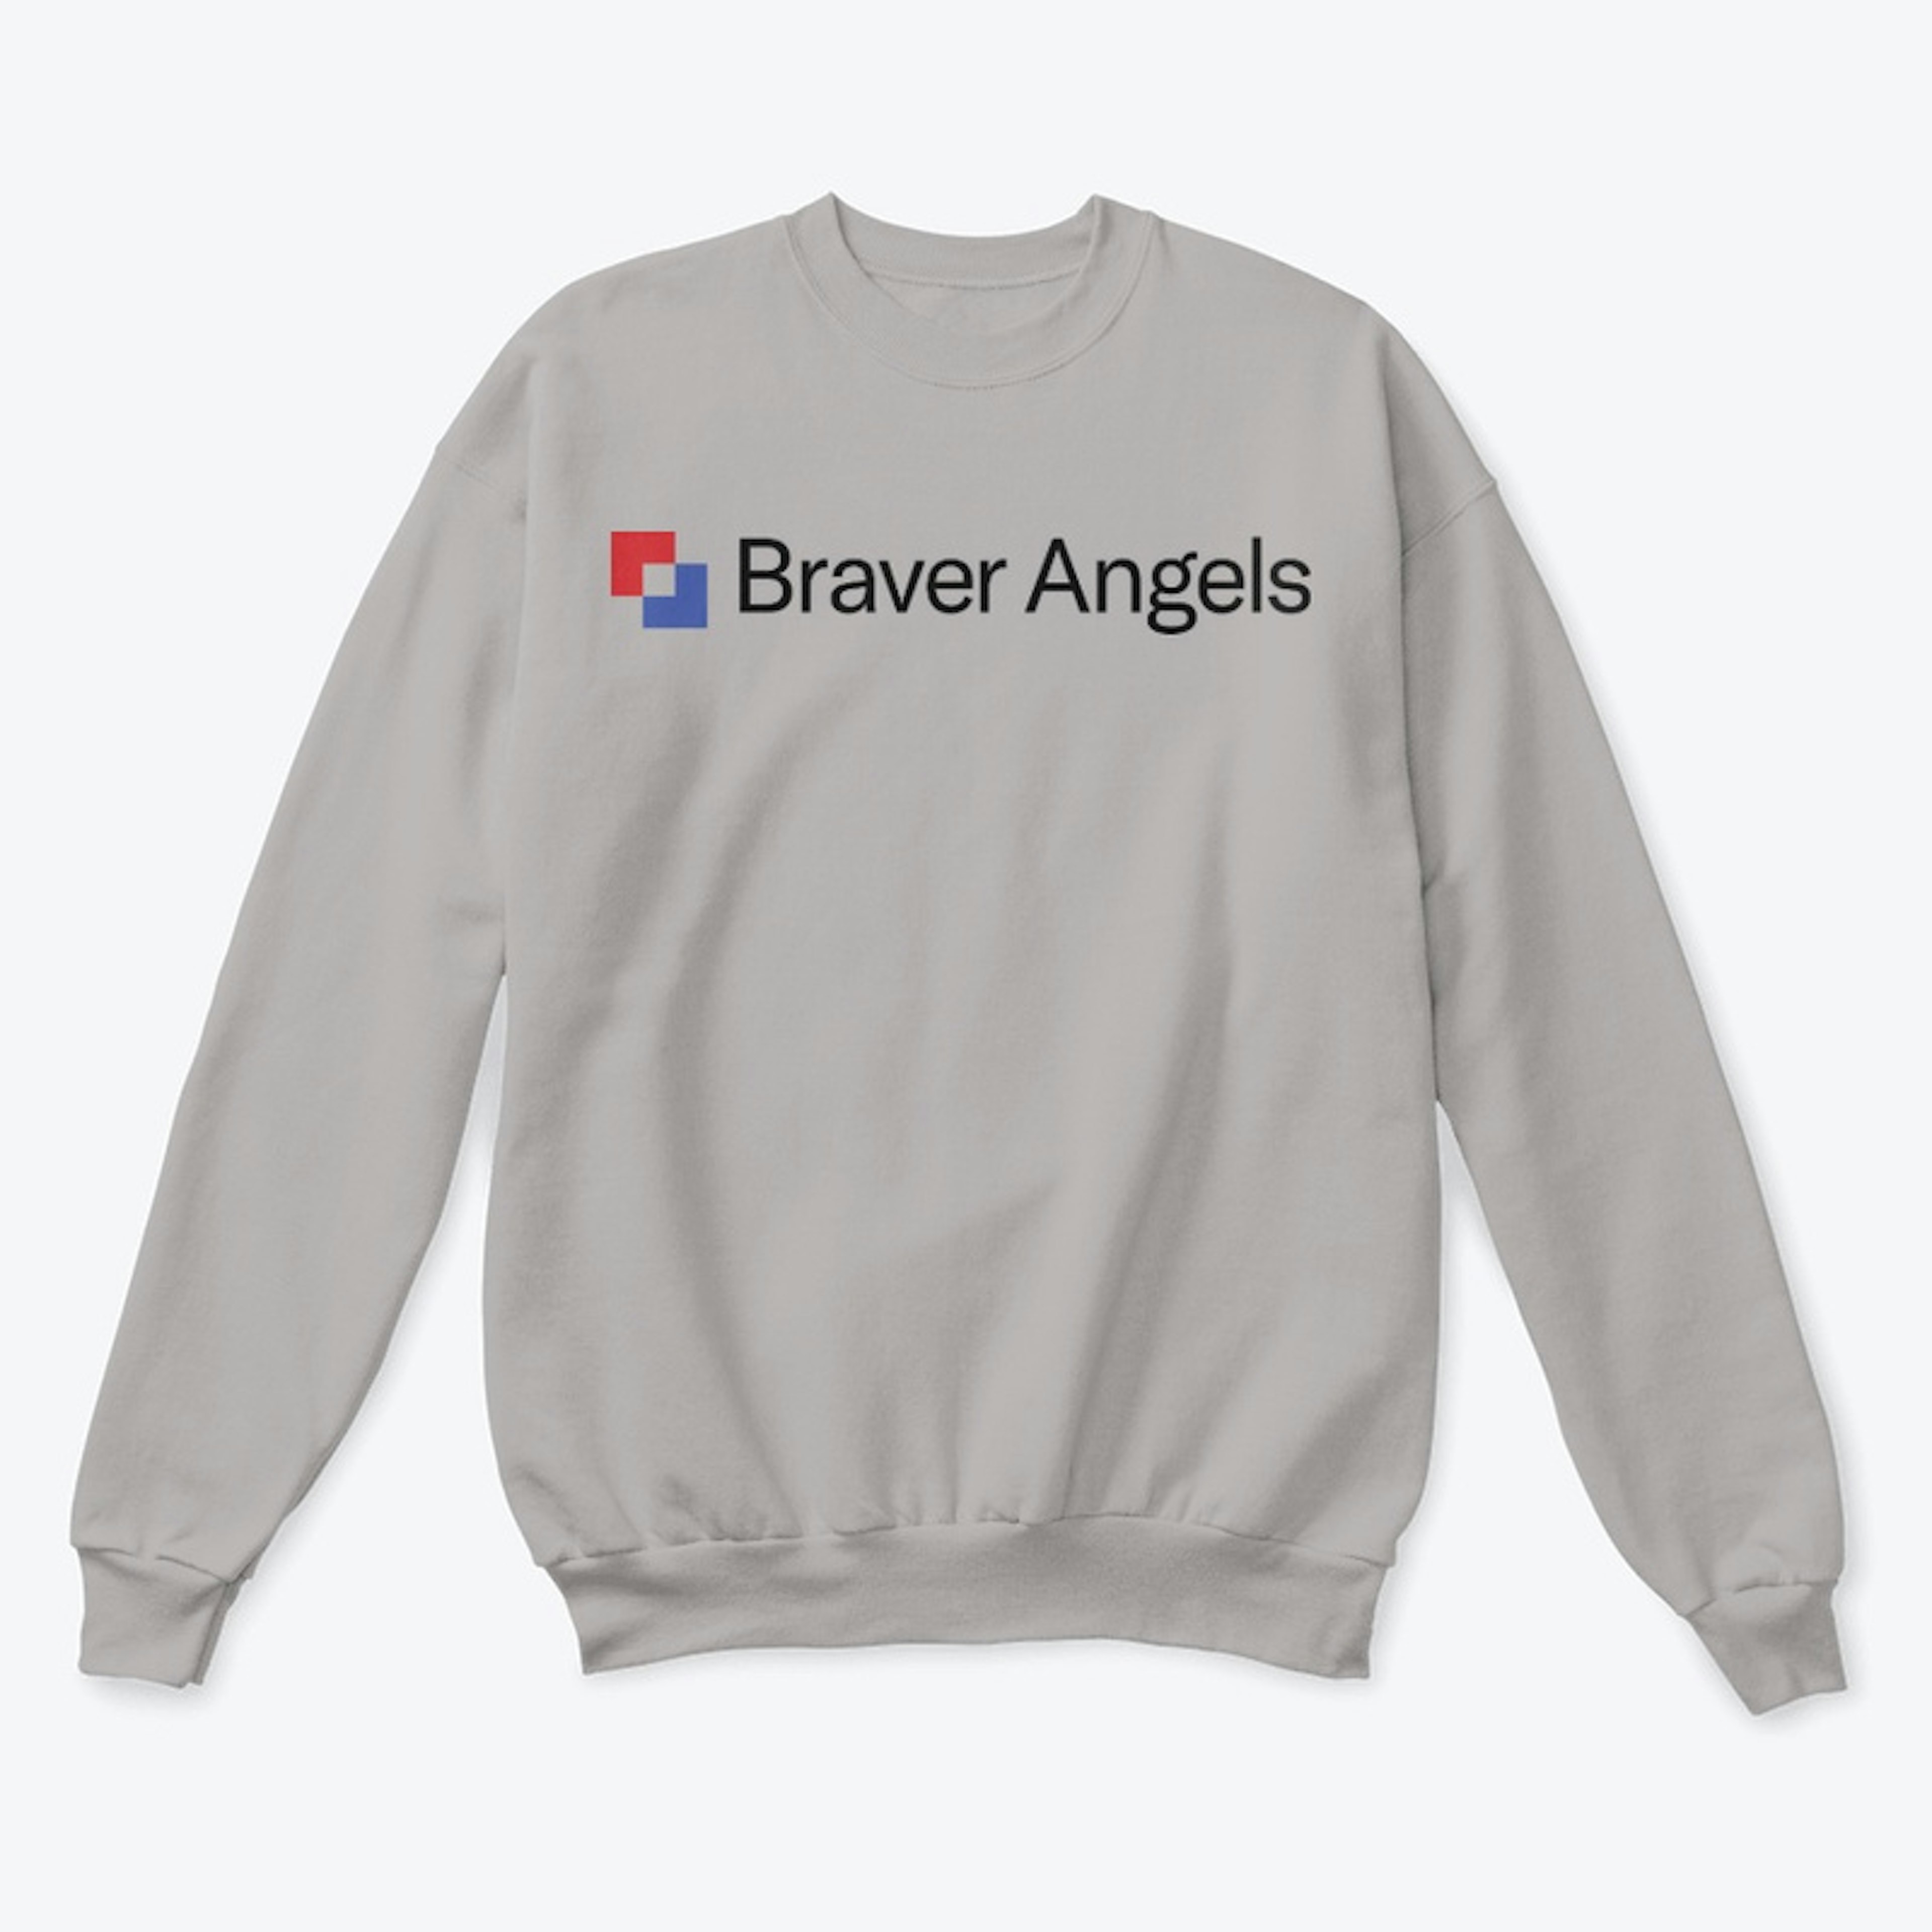 Braver Angels Crew Neck Sweatshirt